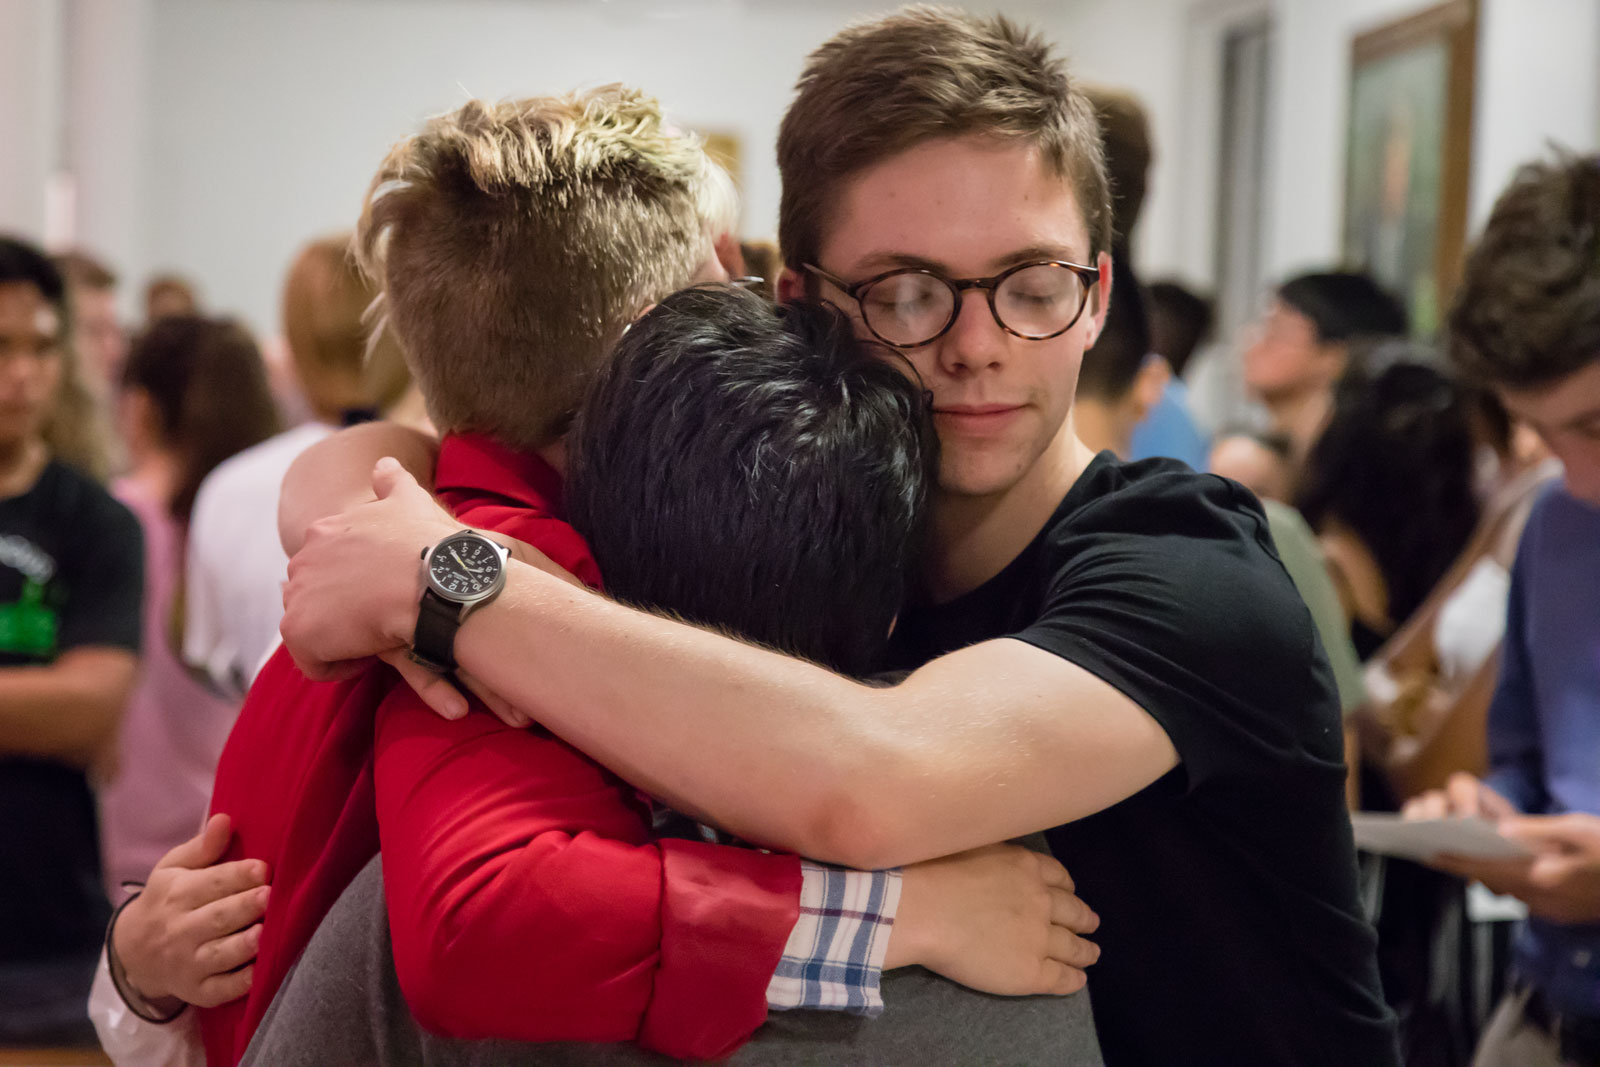 Three students hug